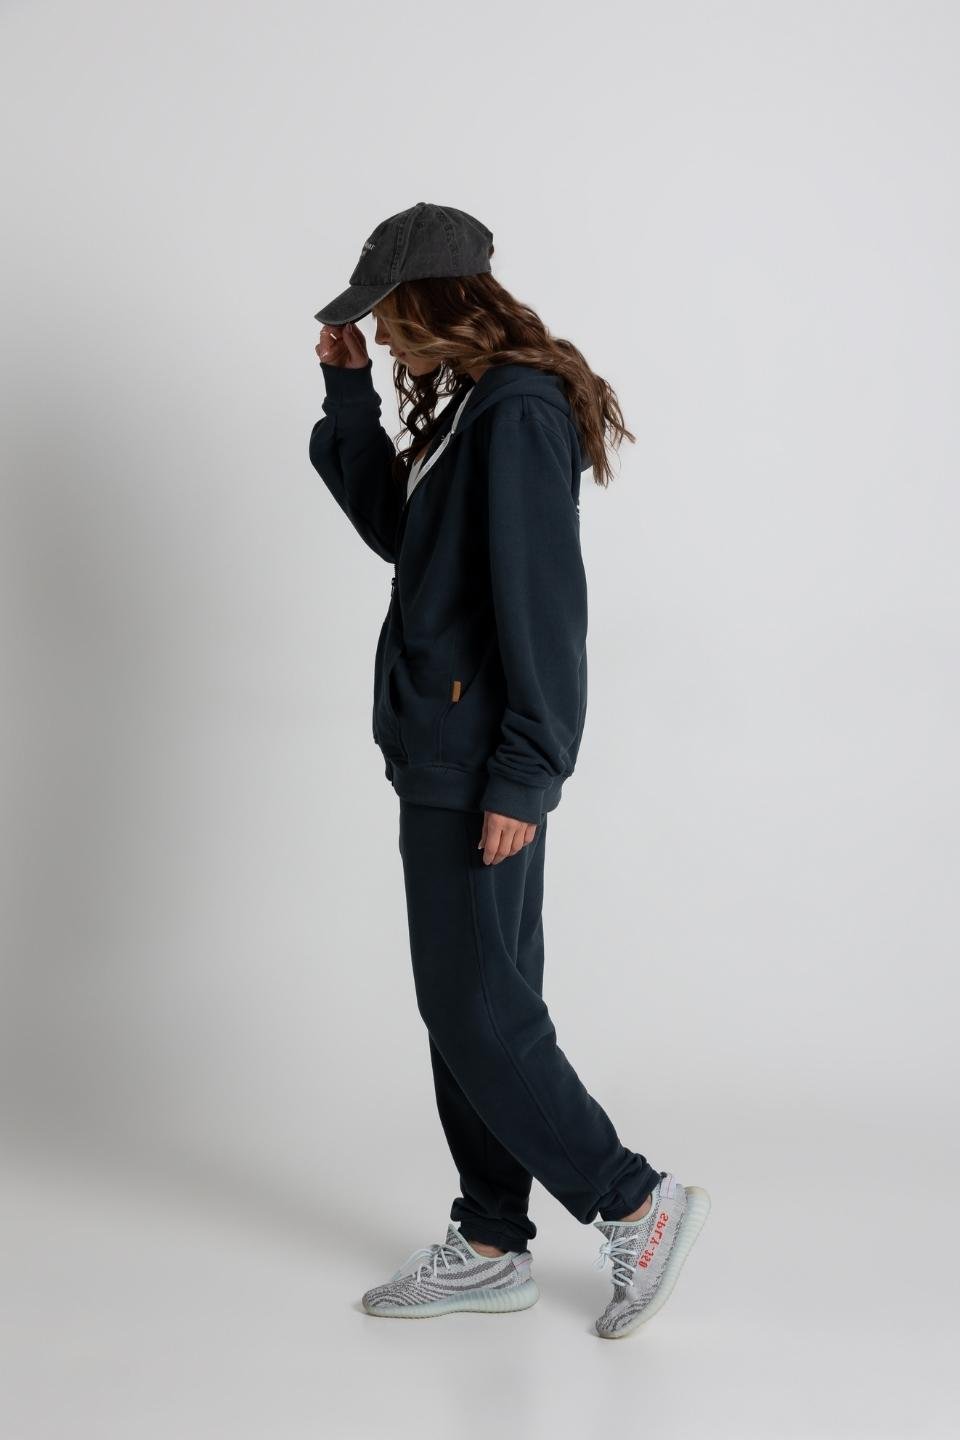 Bluza damska z kapturem hoodie - granatowy - Chiara Wear